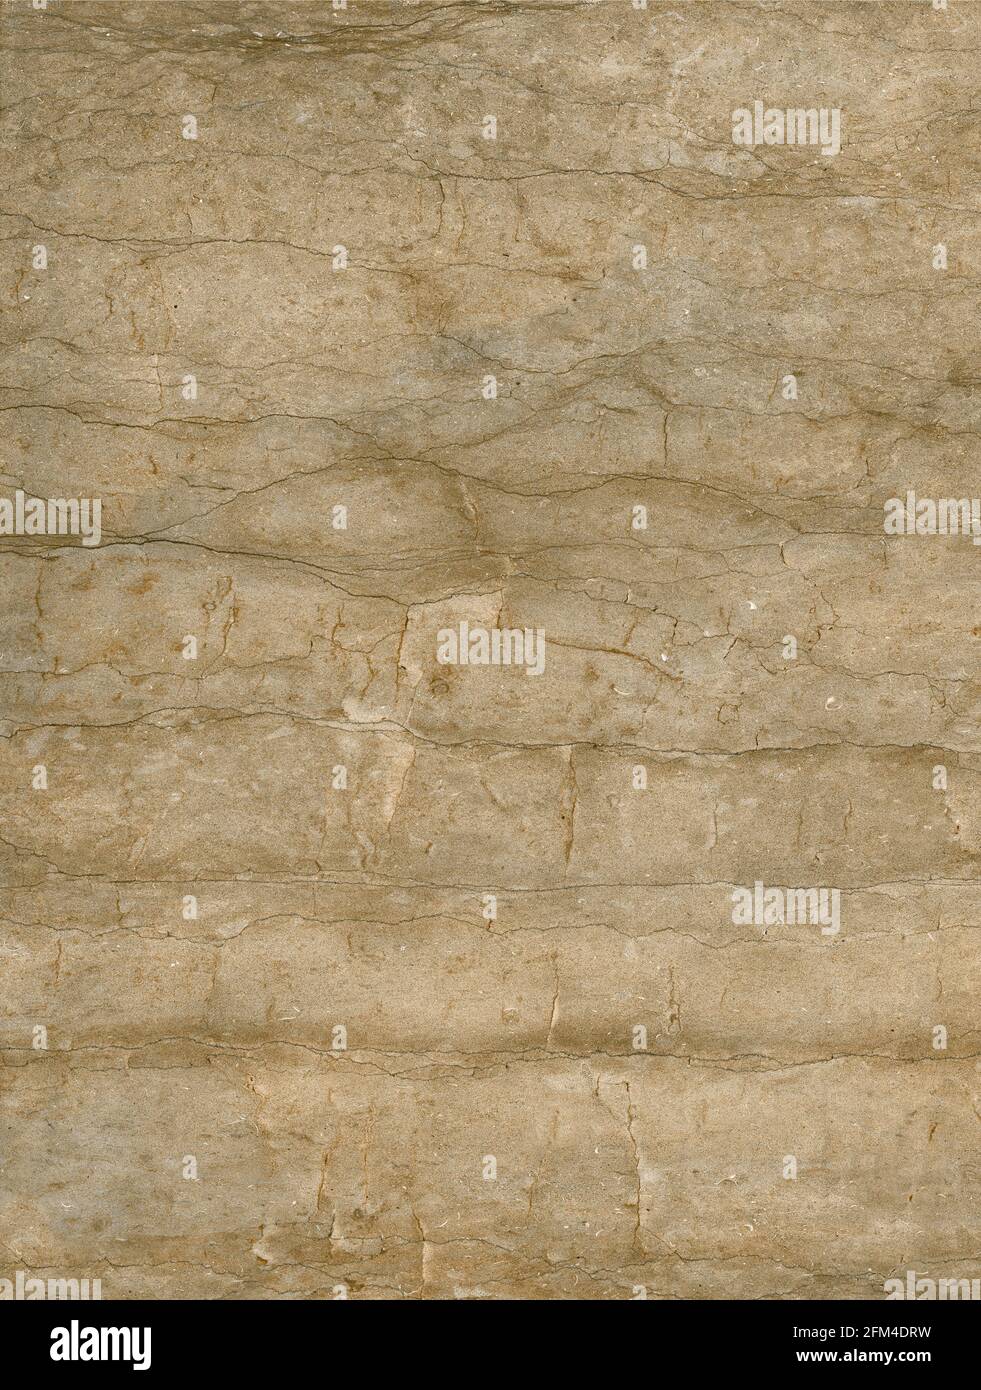 colore beige venature orizzontali finitura lucida con marmo a trama semplice immagine di superficie ad alta risoluzione Foto Stock